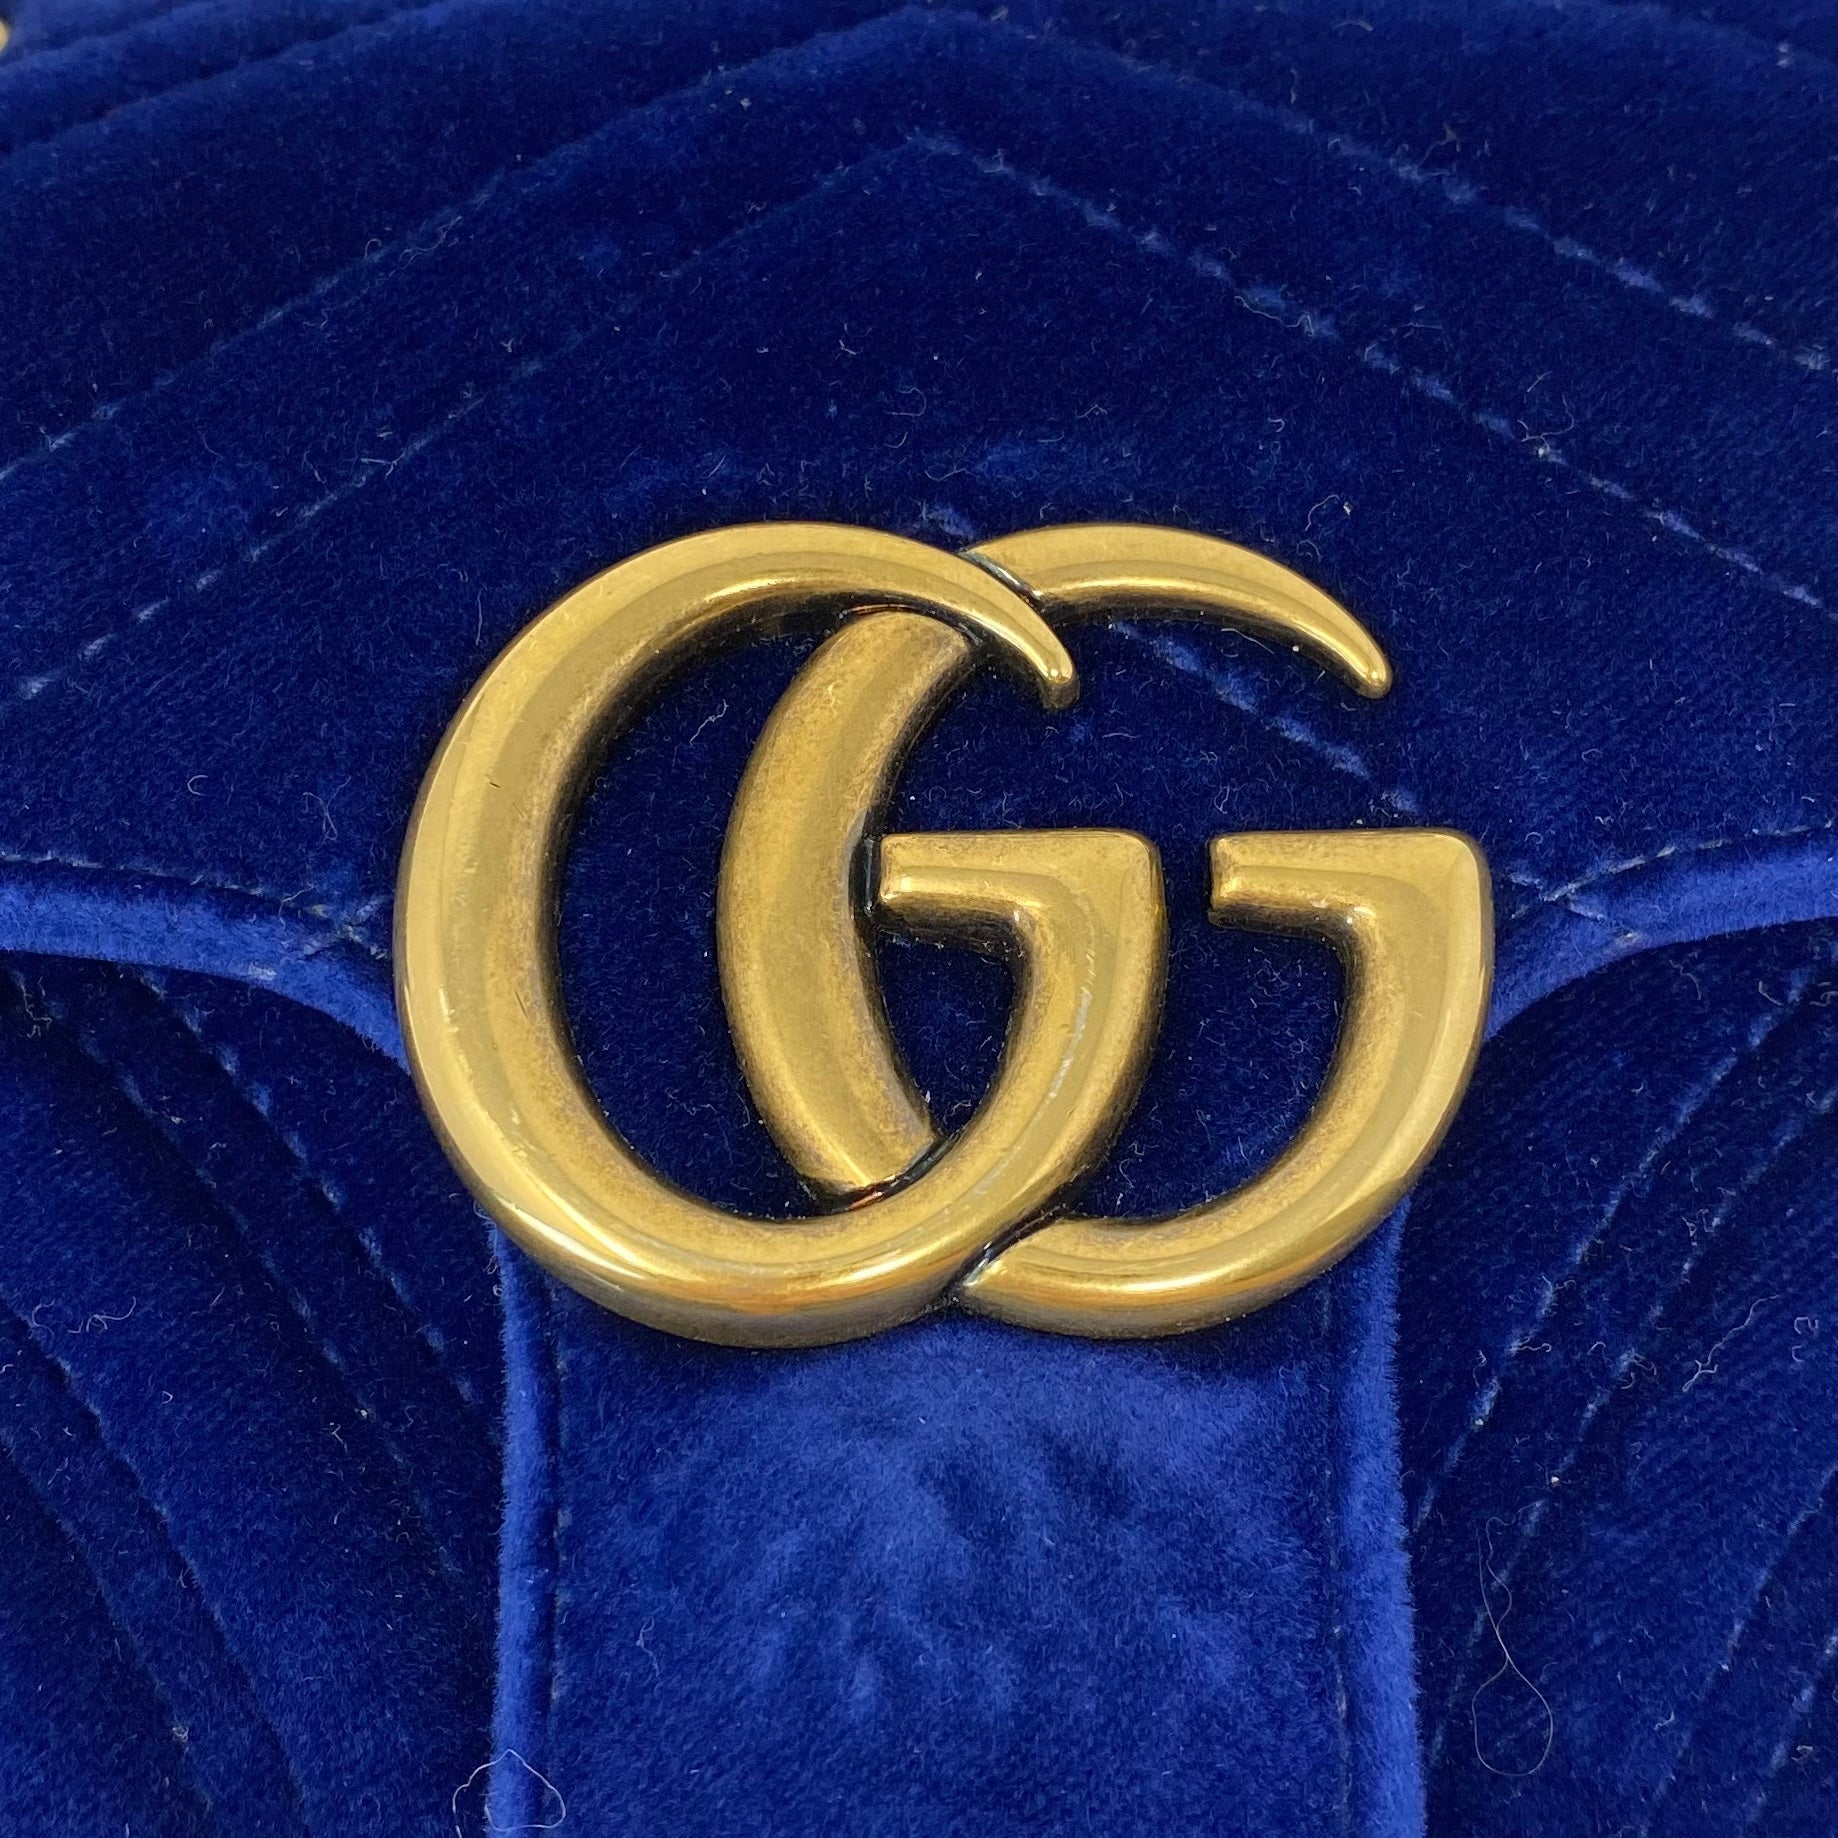 Gucci Blue Velvet Mini GG Marmont Bag